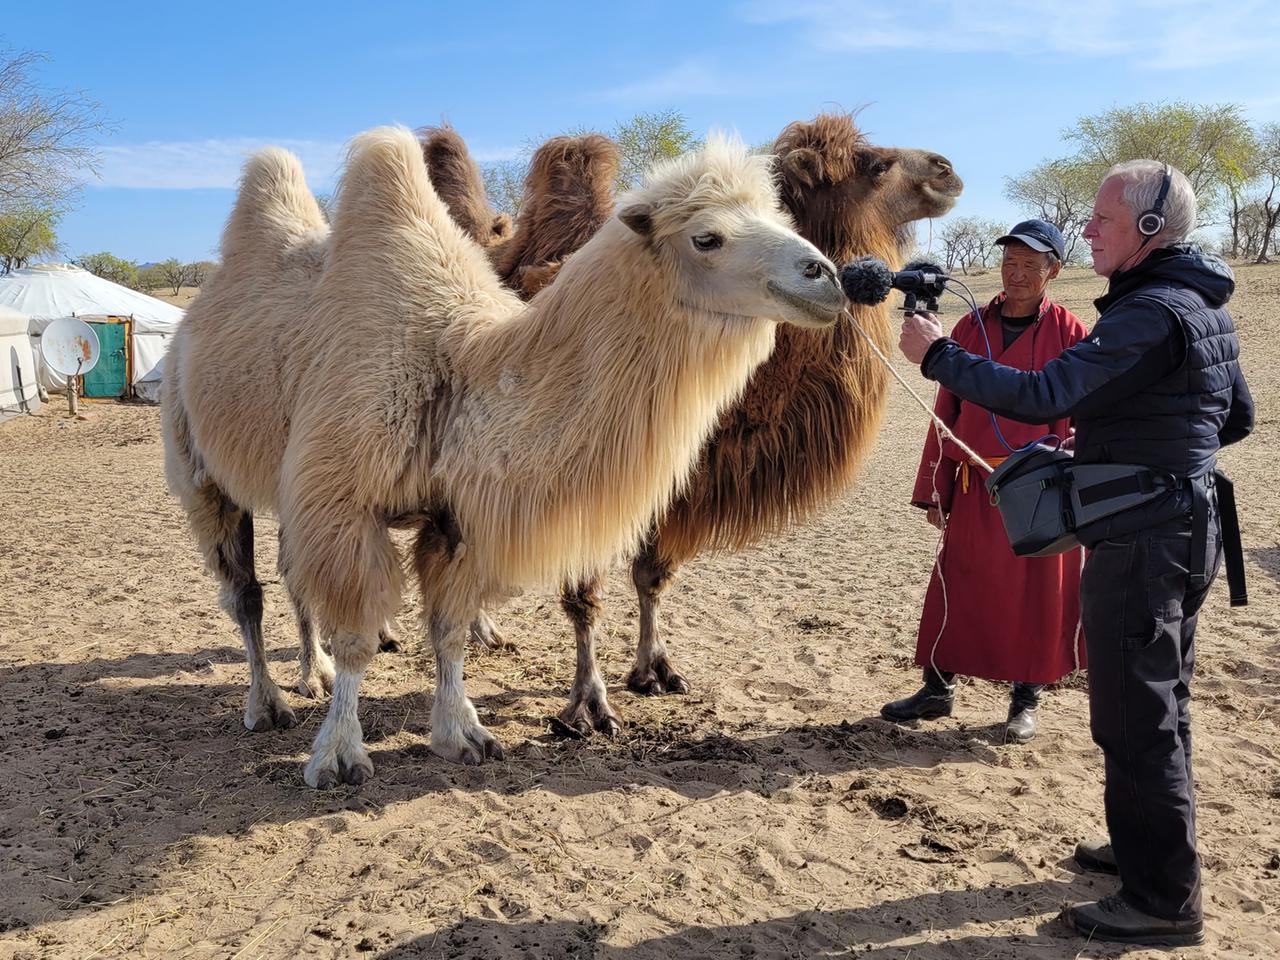 Robin Minard bei der Aufnahme von Kamelen in der Wüstenregion Gobi.